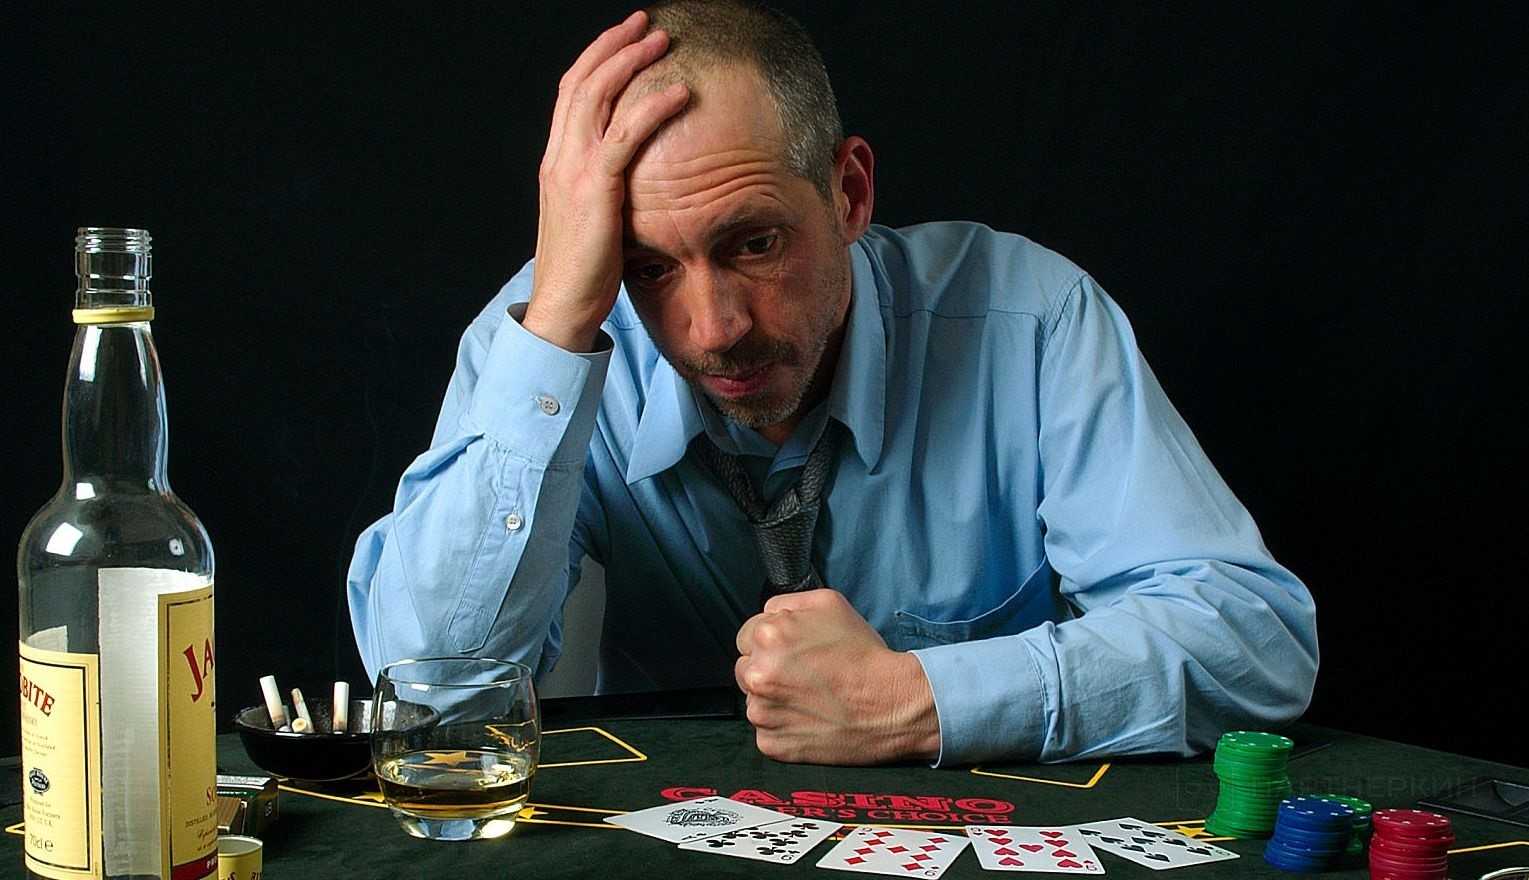 5 стадий игромании, а также способы избежать зависимости от азартных игр